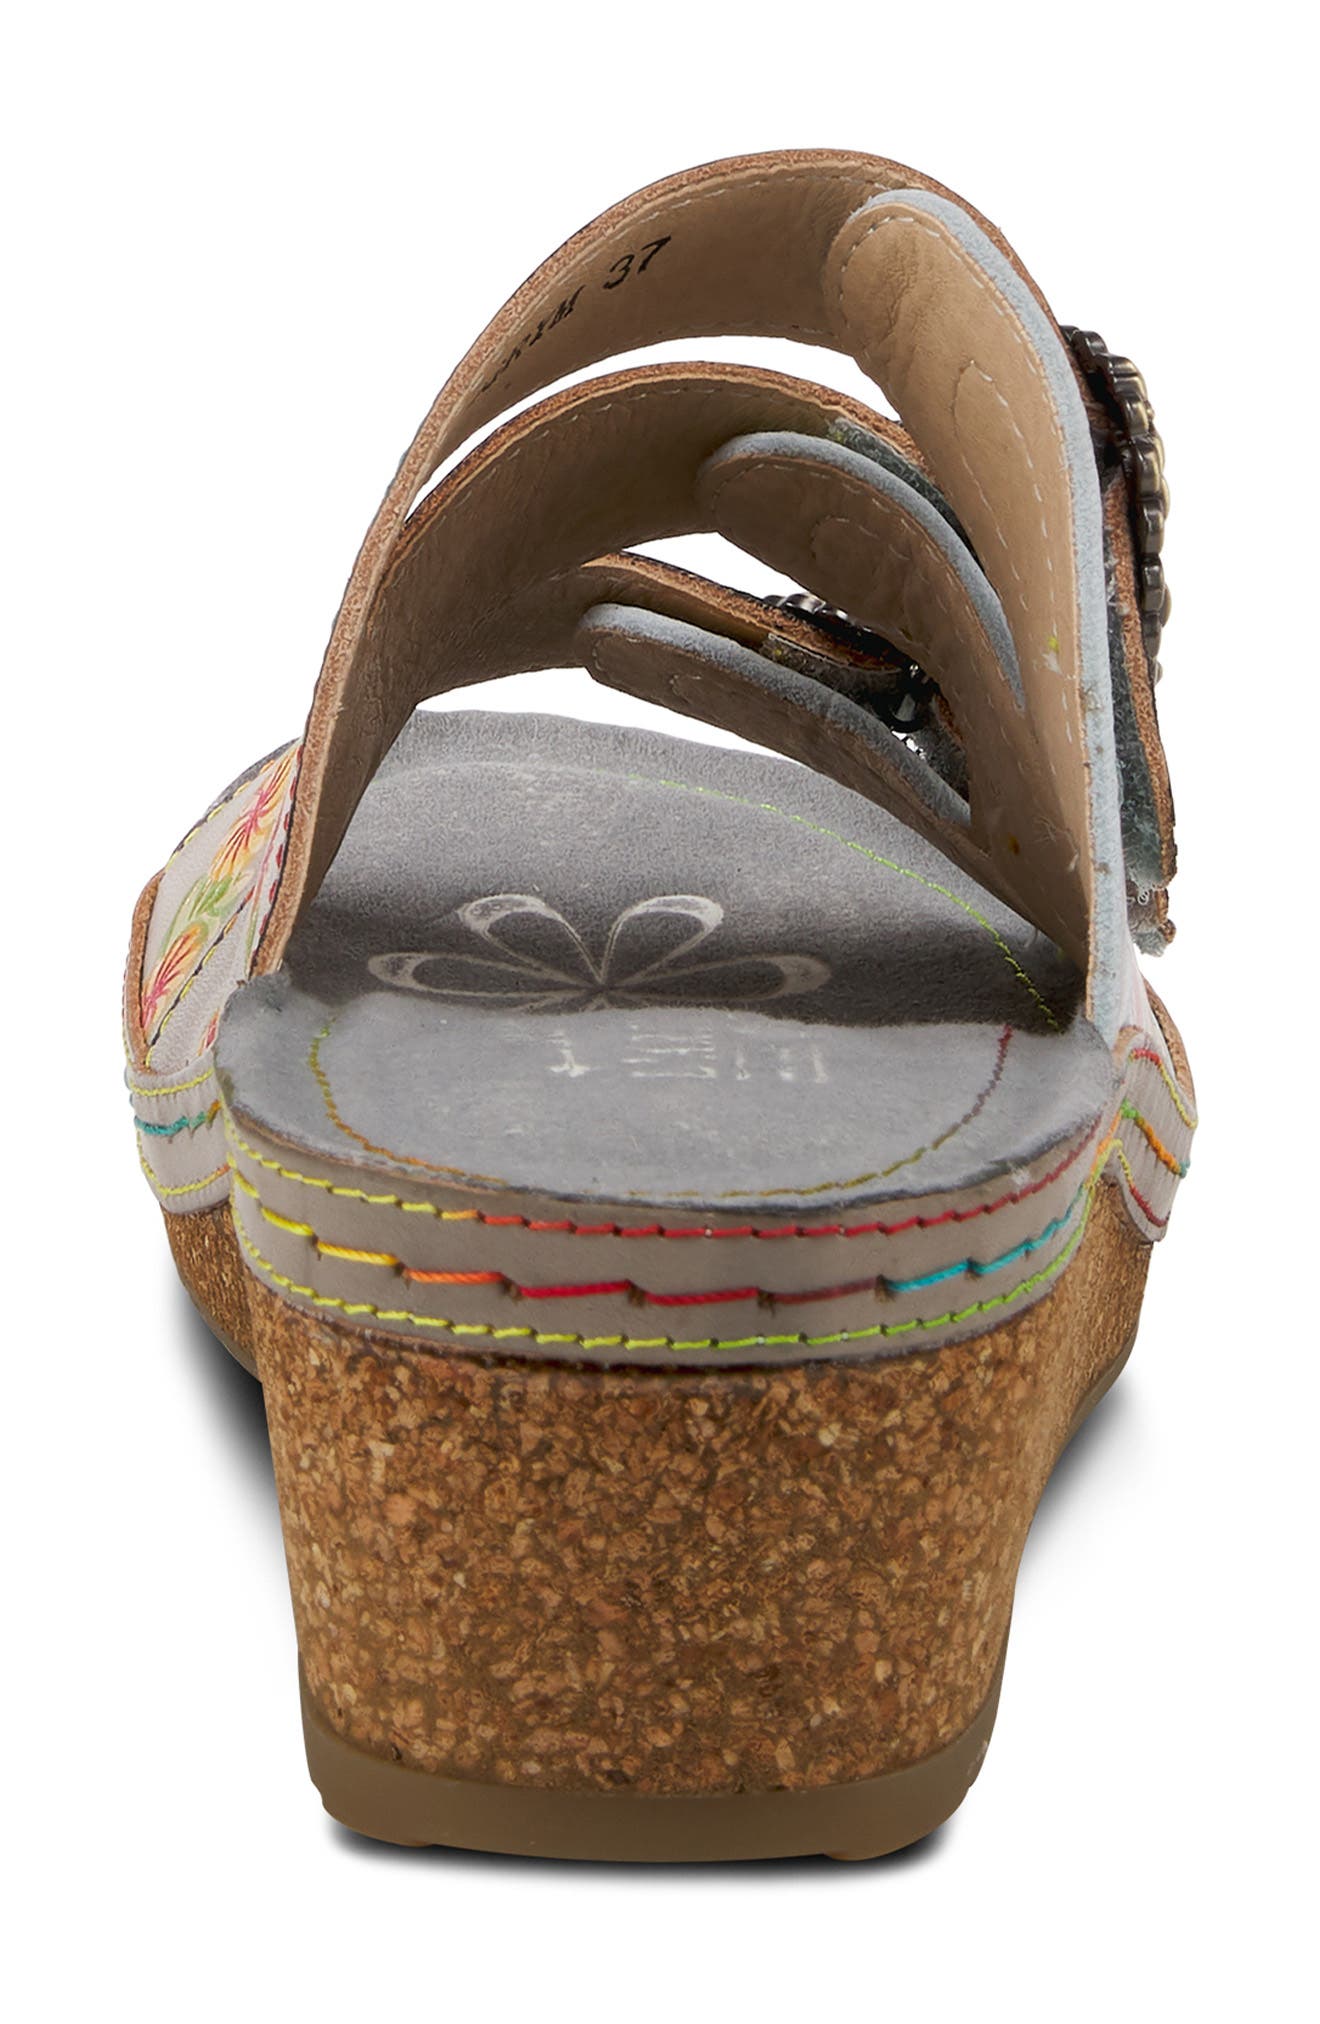 Poetry Floral Wedge Slide Sandal in Grey Multi at Nordstrom Nordstrom Women Shoes High Heels Wedges Wedge Sandals 